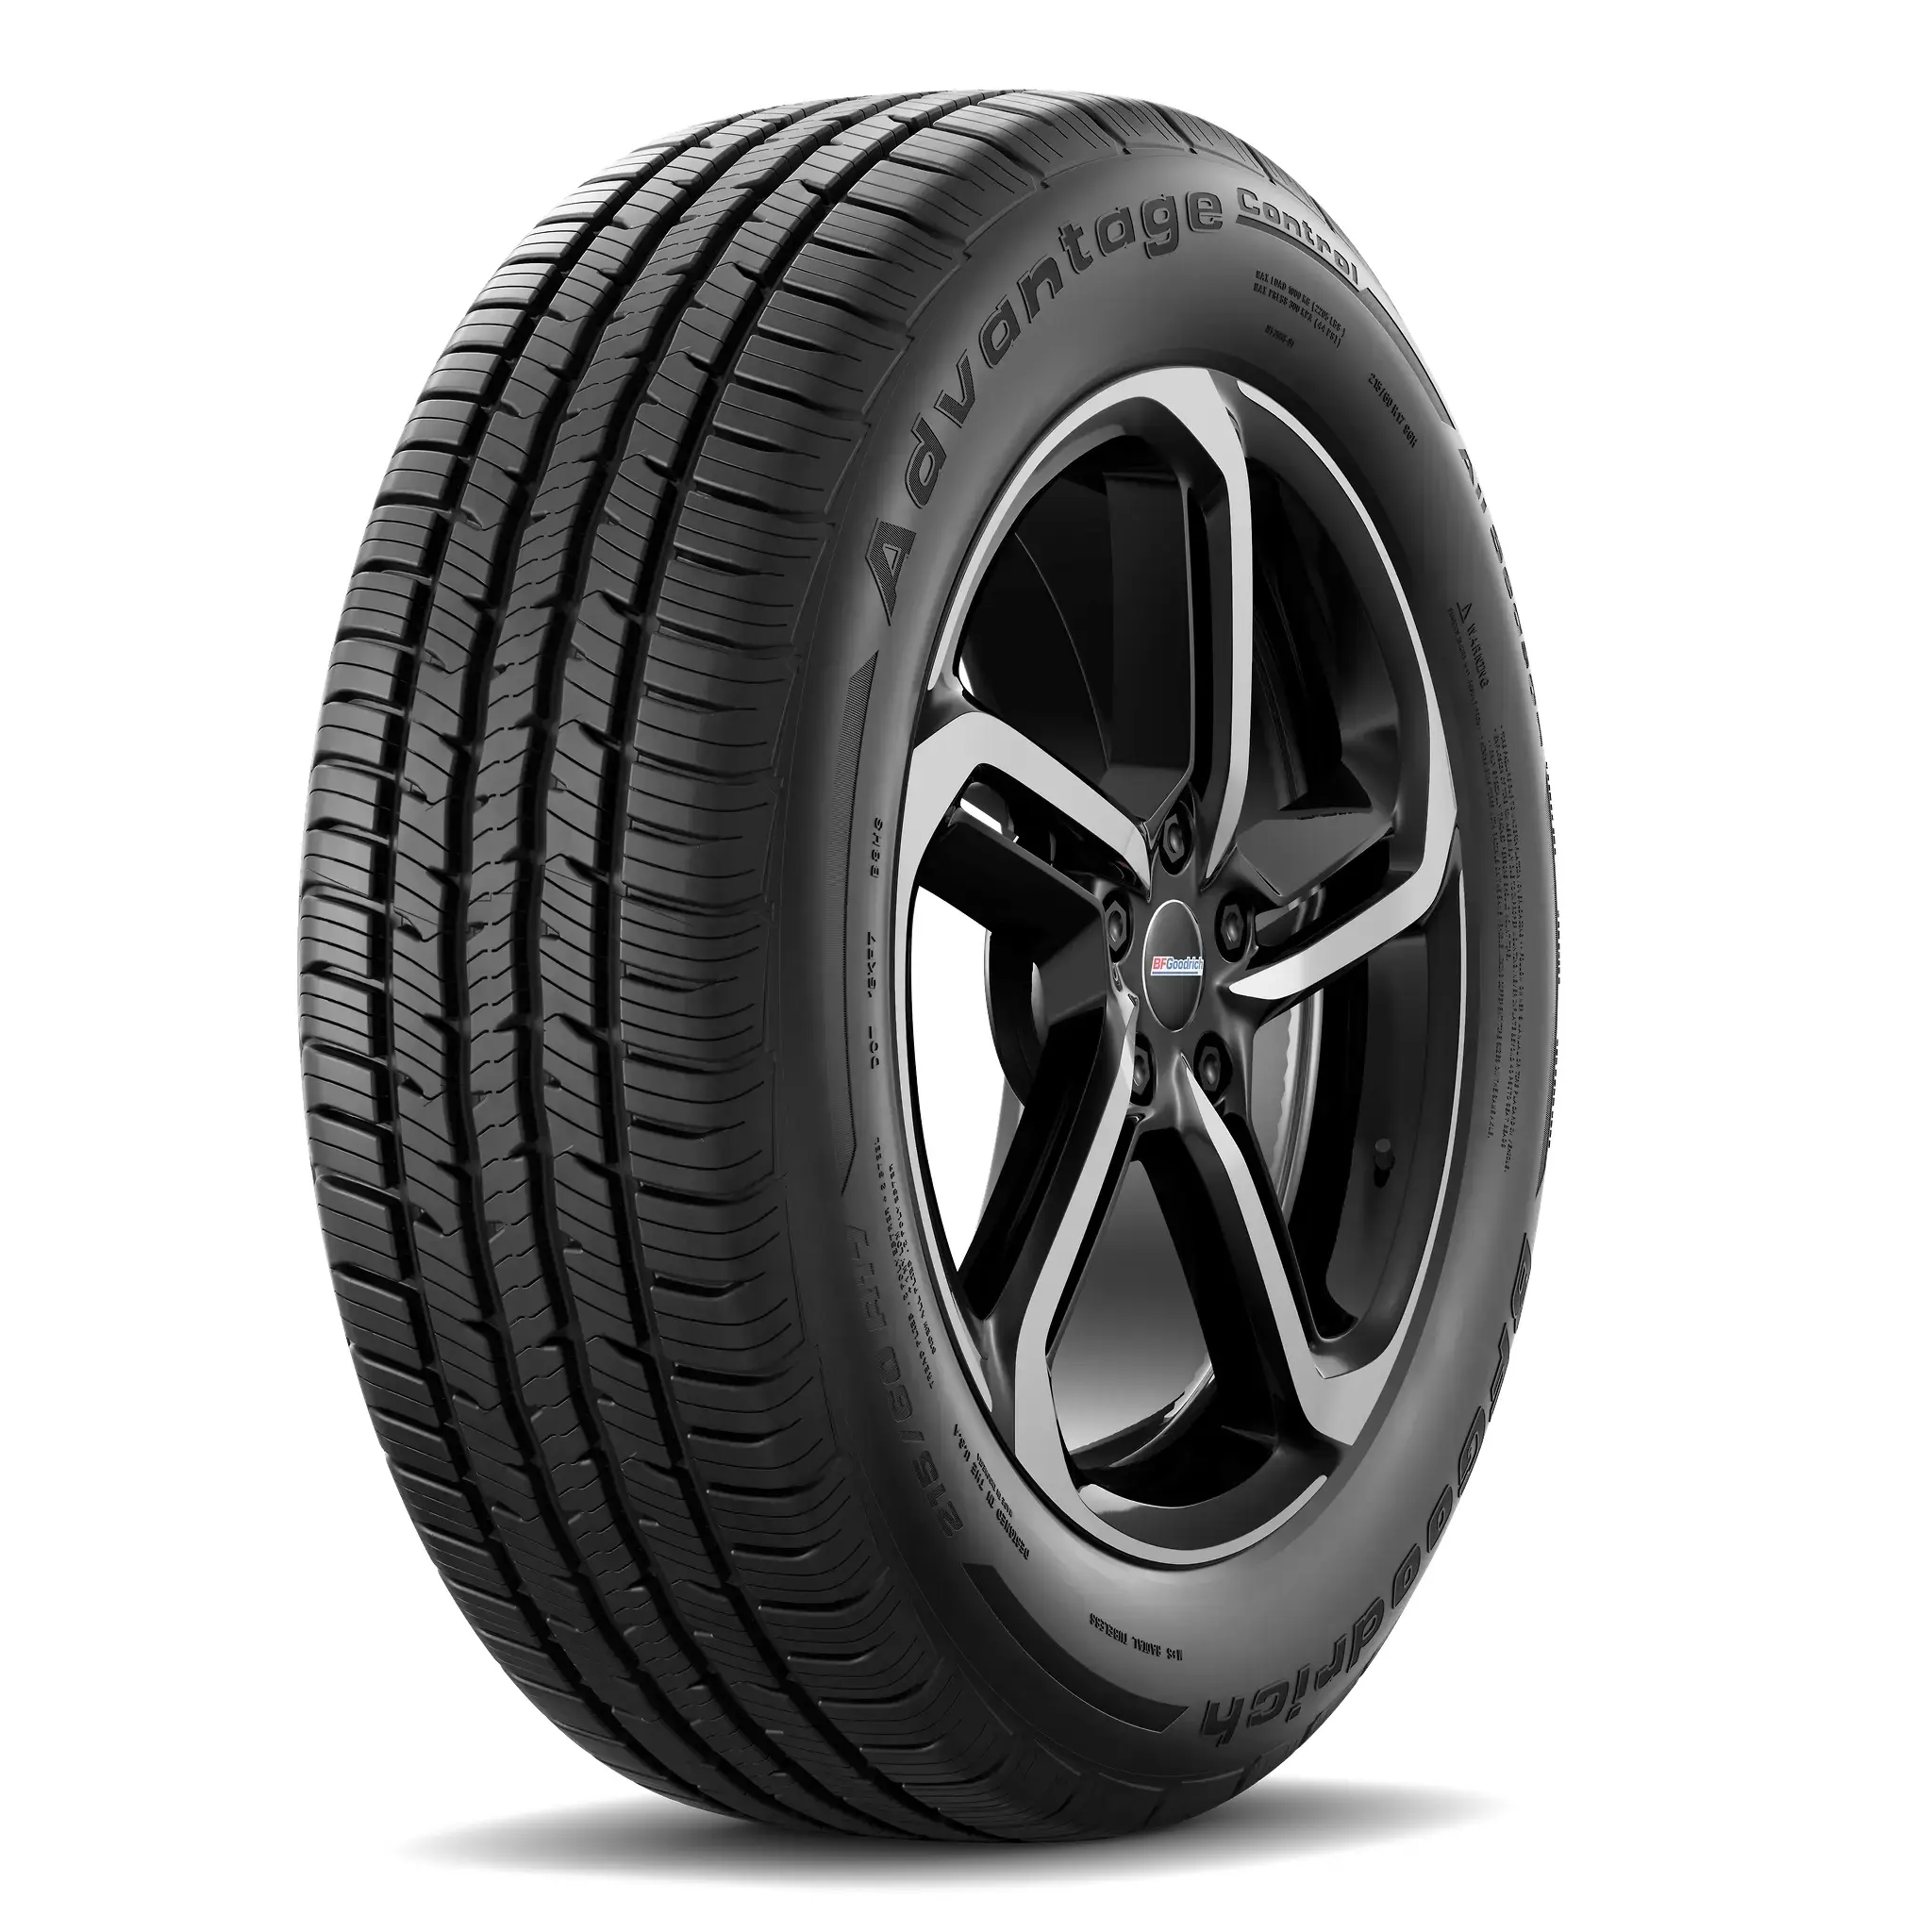 Neumáticos Dunlop al mejor precio de neumáticos usados para automóviles y camiones disponibles a granel